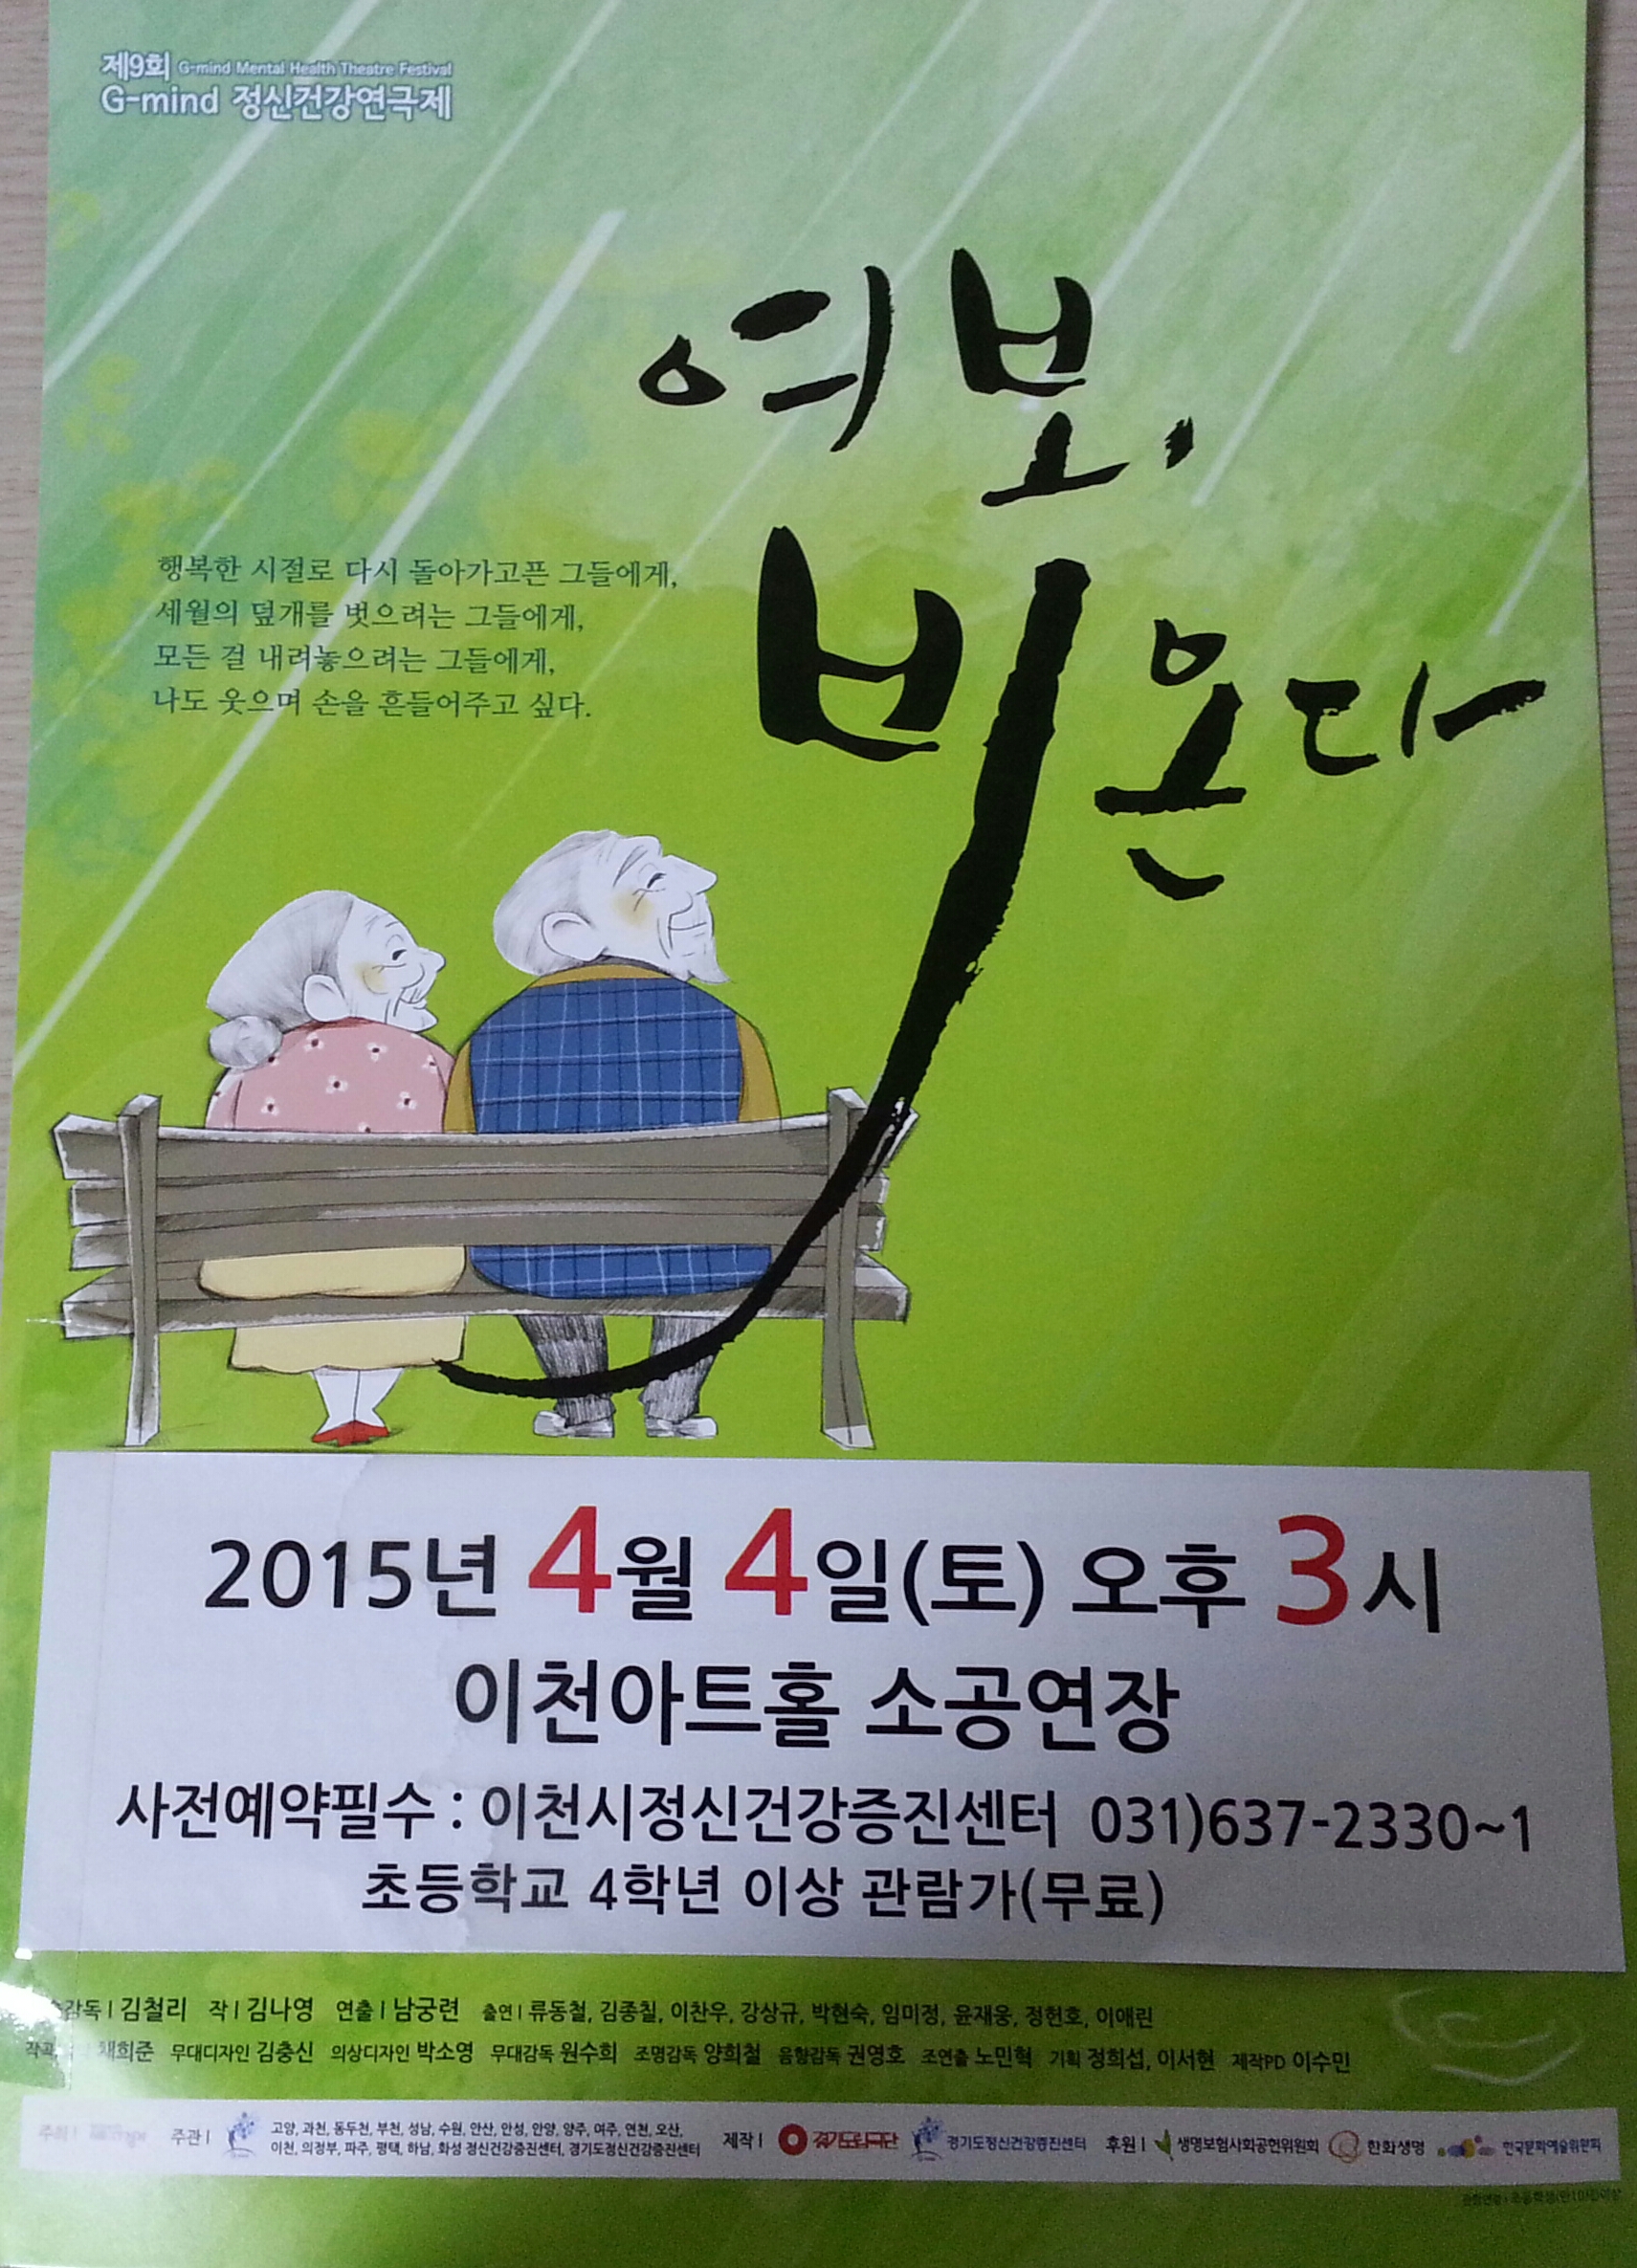 제9회 G-mind 정신건강연극제 이천지역 포스터